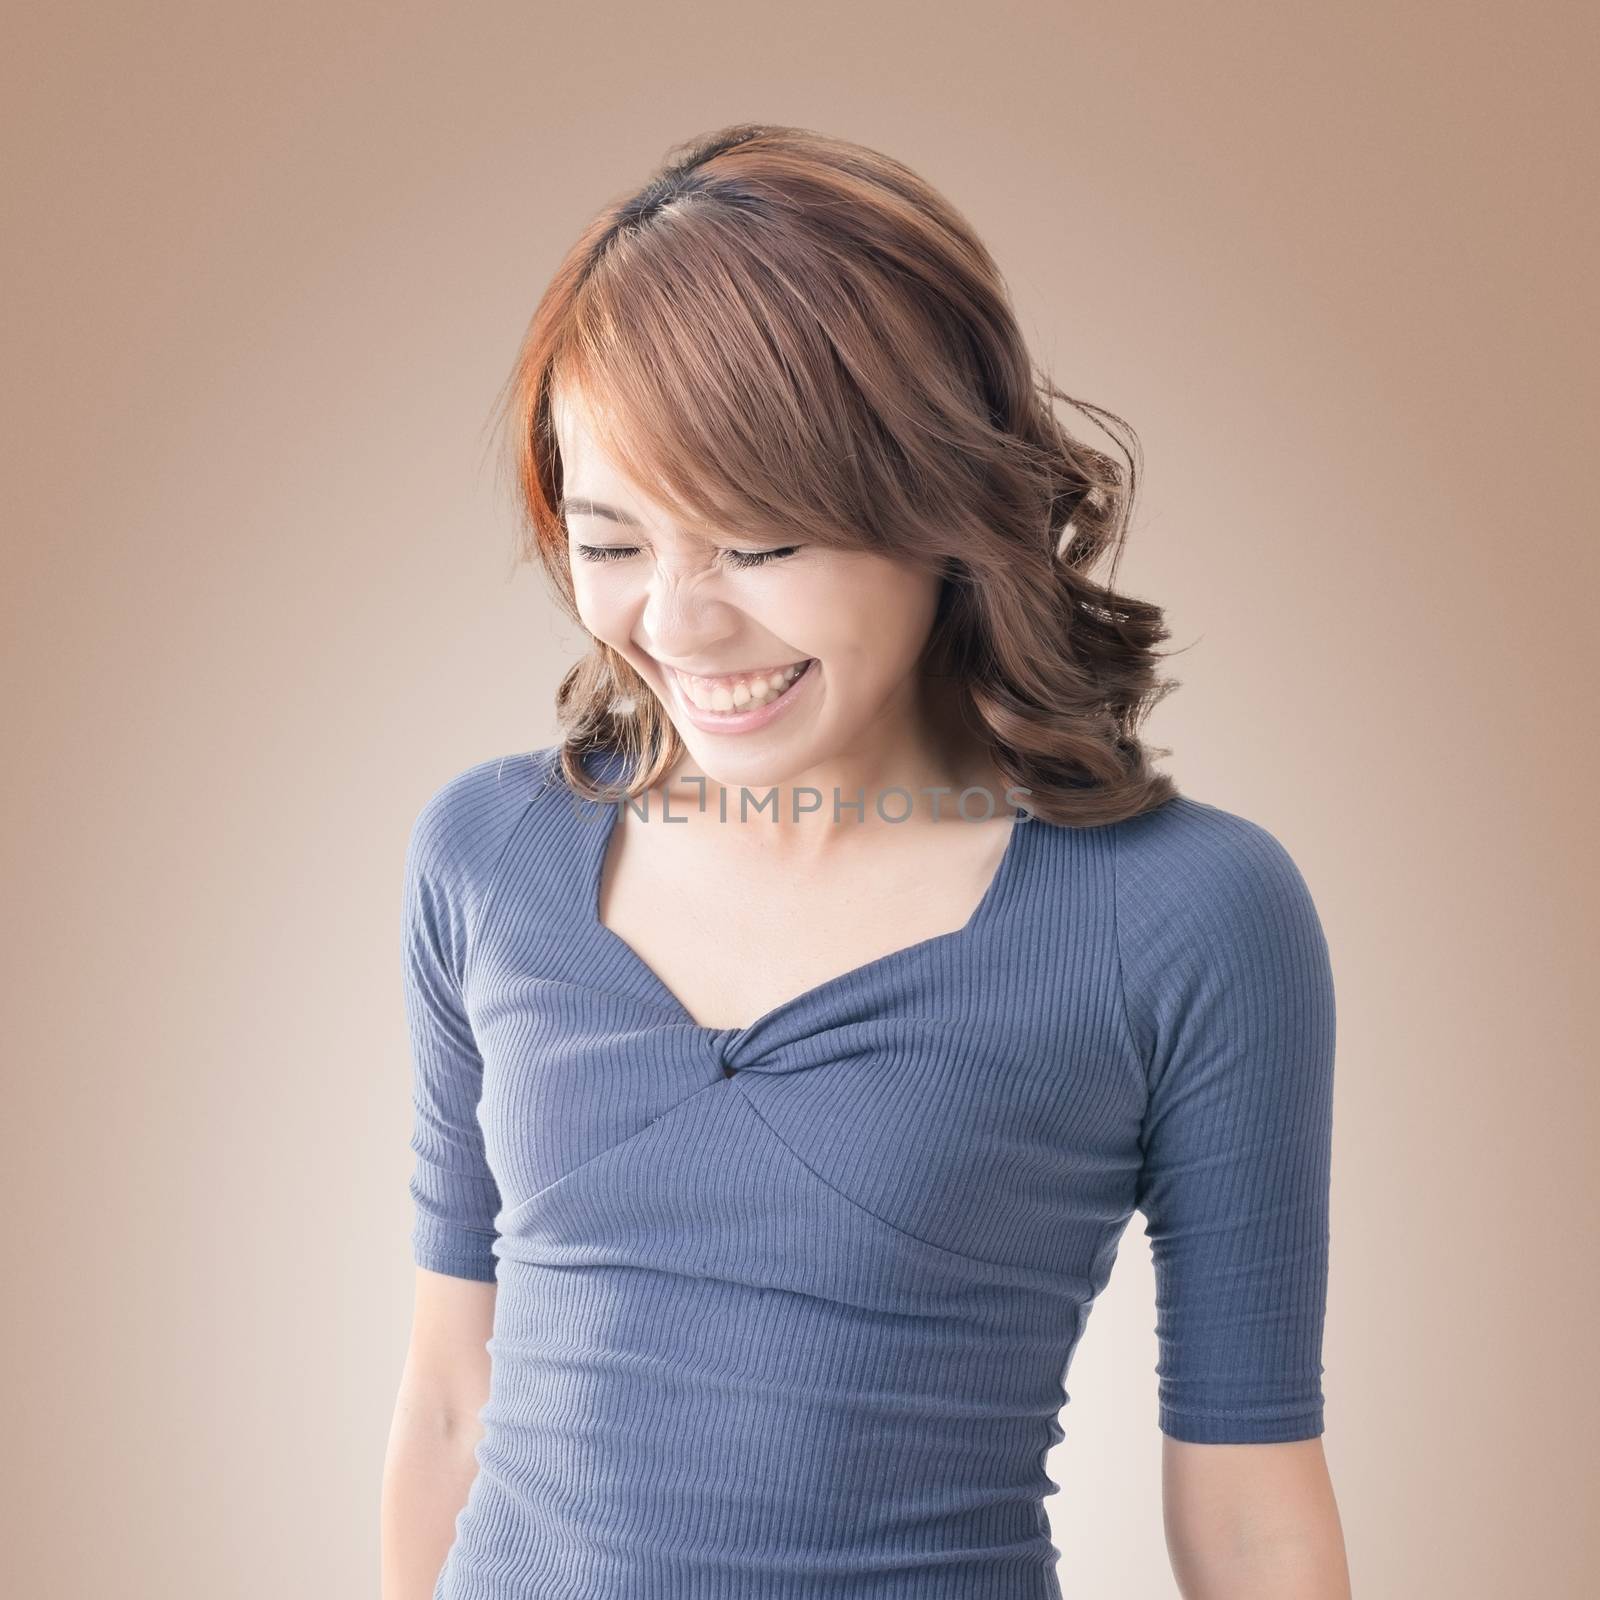 Shy Asian girl smiling, closeup portrait.